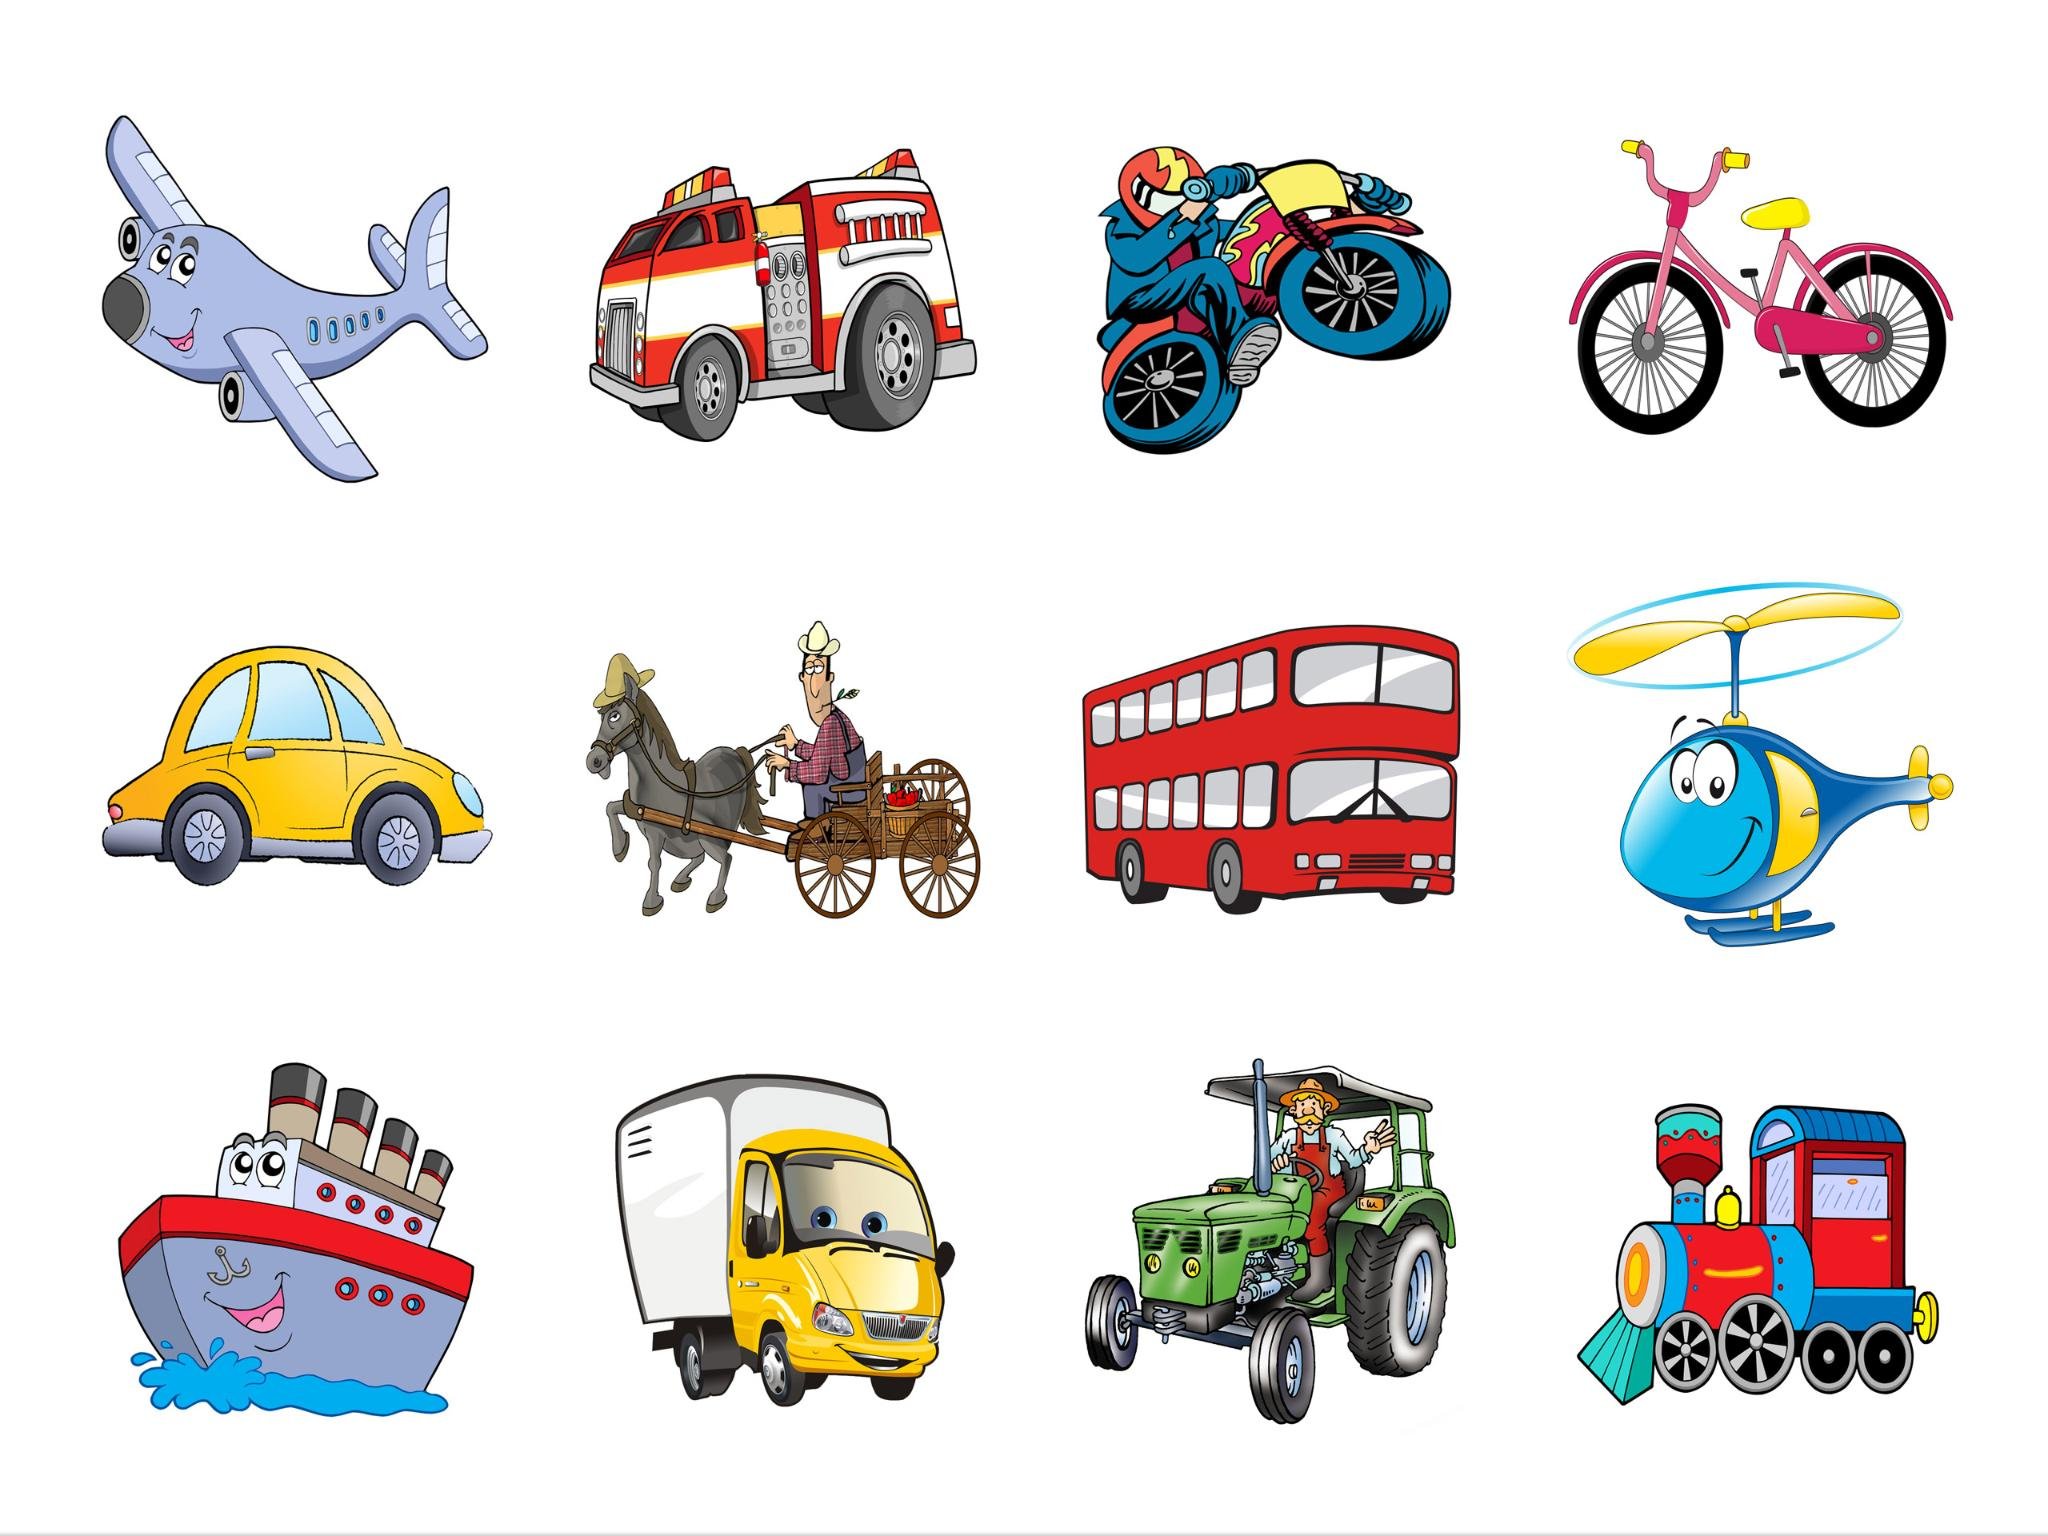 Транспорт для детей видео лет. Транспорт рисунок. Детские картинки транспорт. Картинка транспорт для детей в детском саду. Фон транспорт для детей.